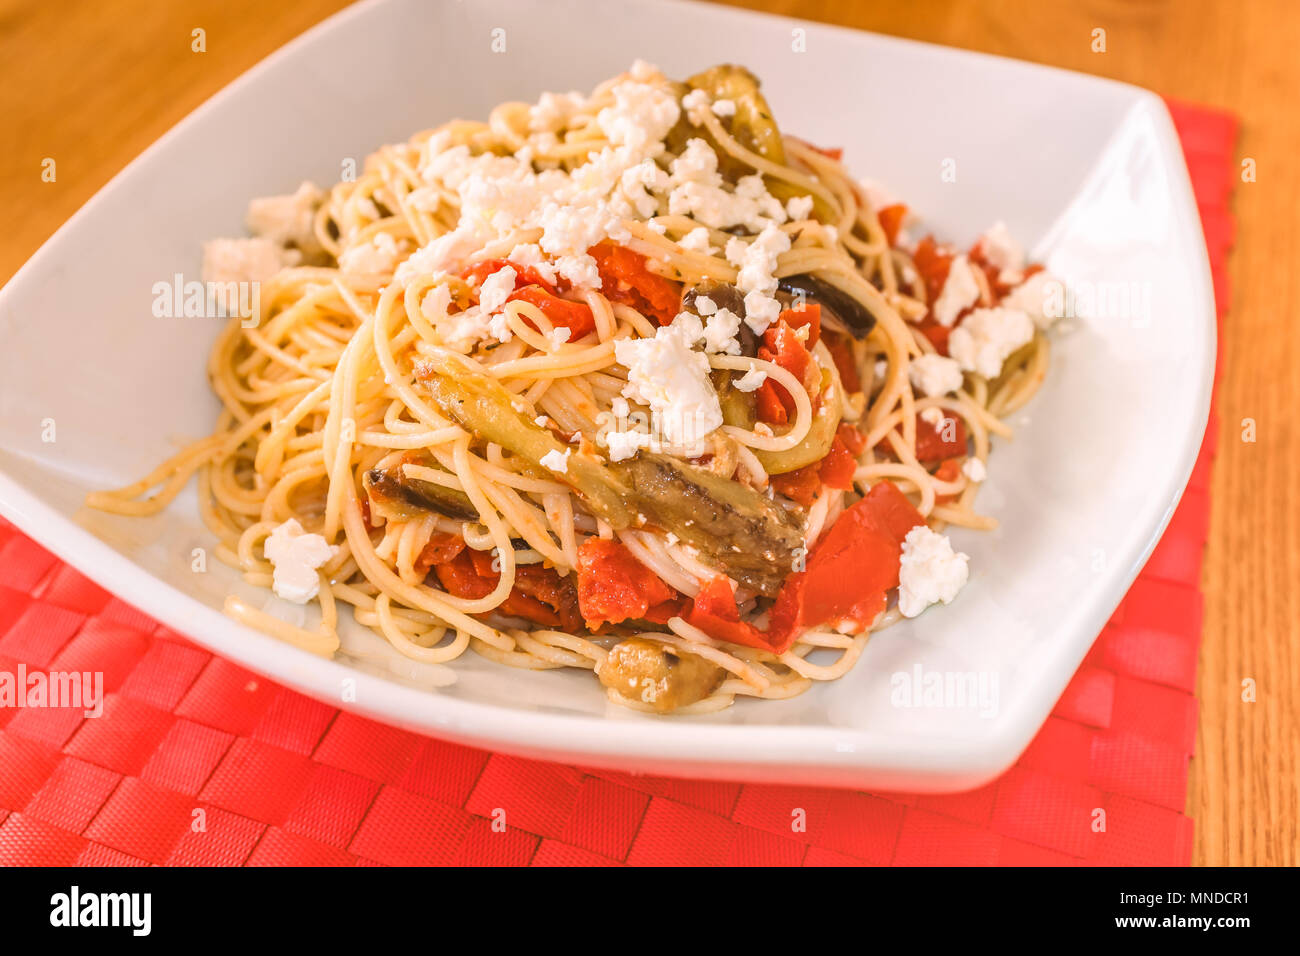 Un piatto bianco su un posto rosso tappeto di con un pasto mediterraneo di spaghetti, il formaggio feta, melanzana (impianto uovo) e pomodoro Foto Stock